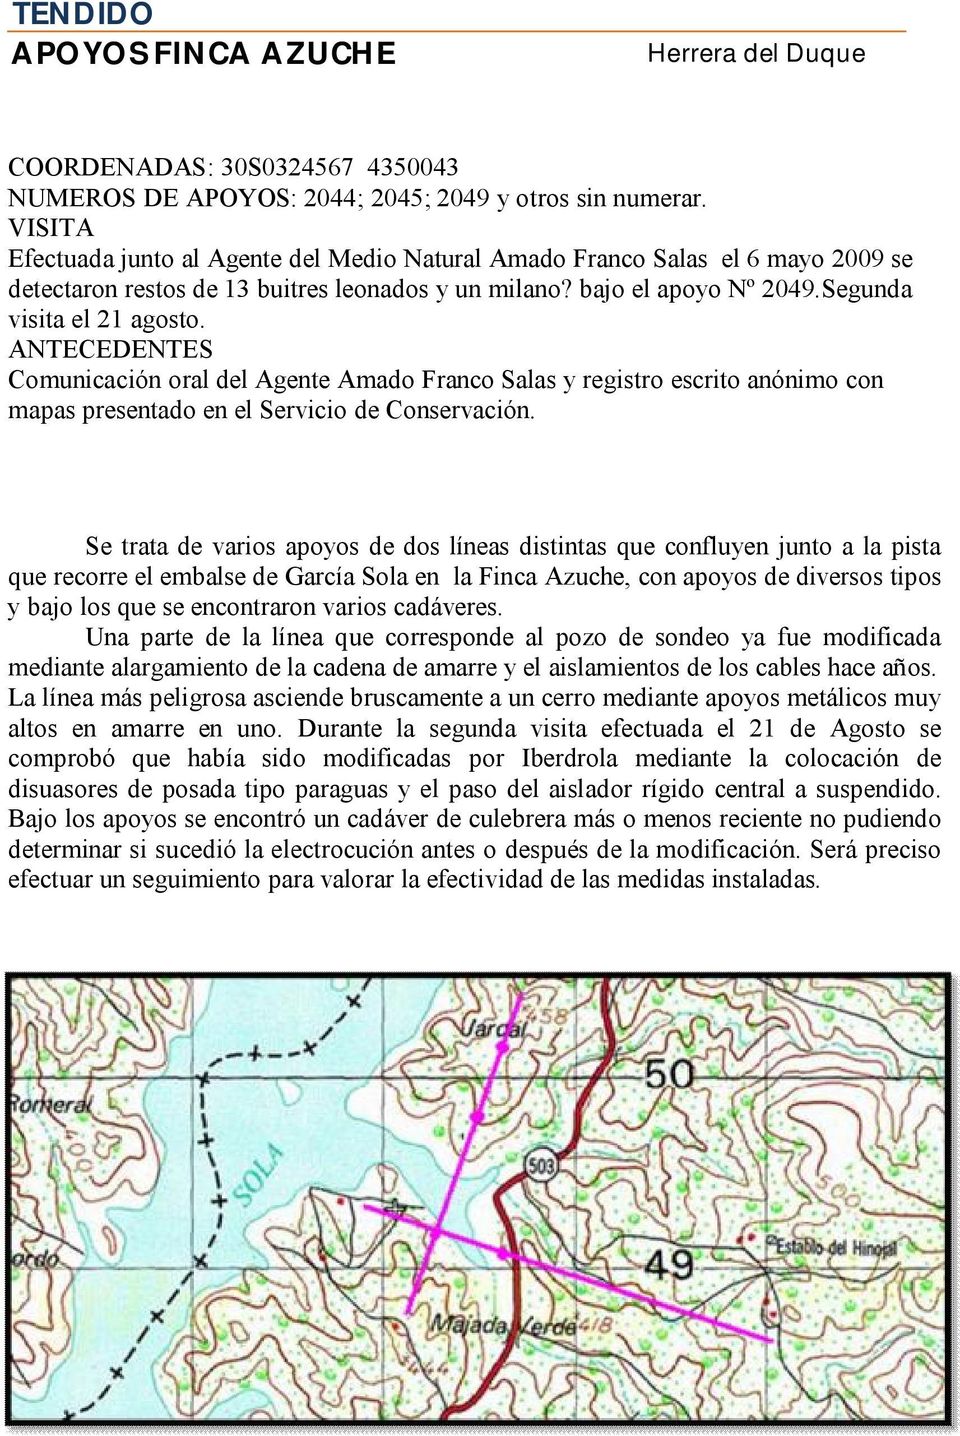 ANTECEDENTES Comunicación oral del Agente Amado Franco Salas y registro escrito anónimo con mapas presentado en el Servicio de Conservación.